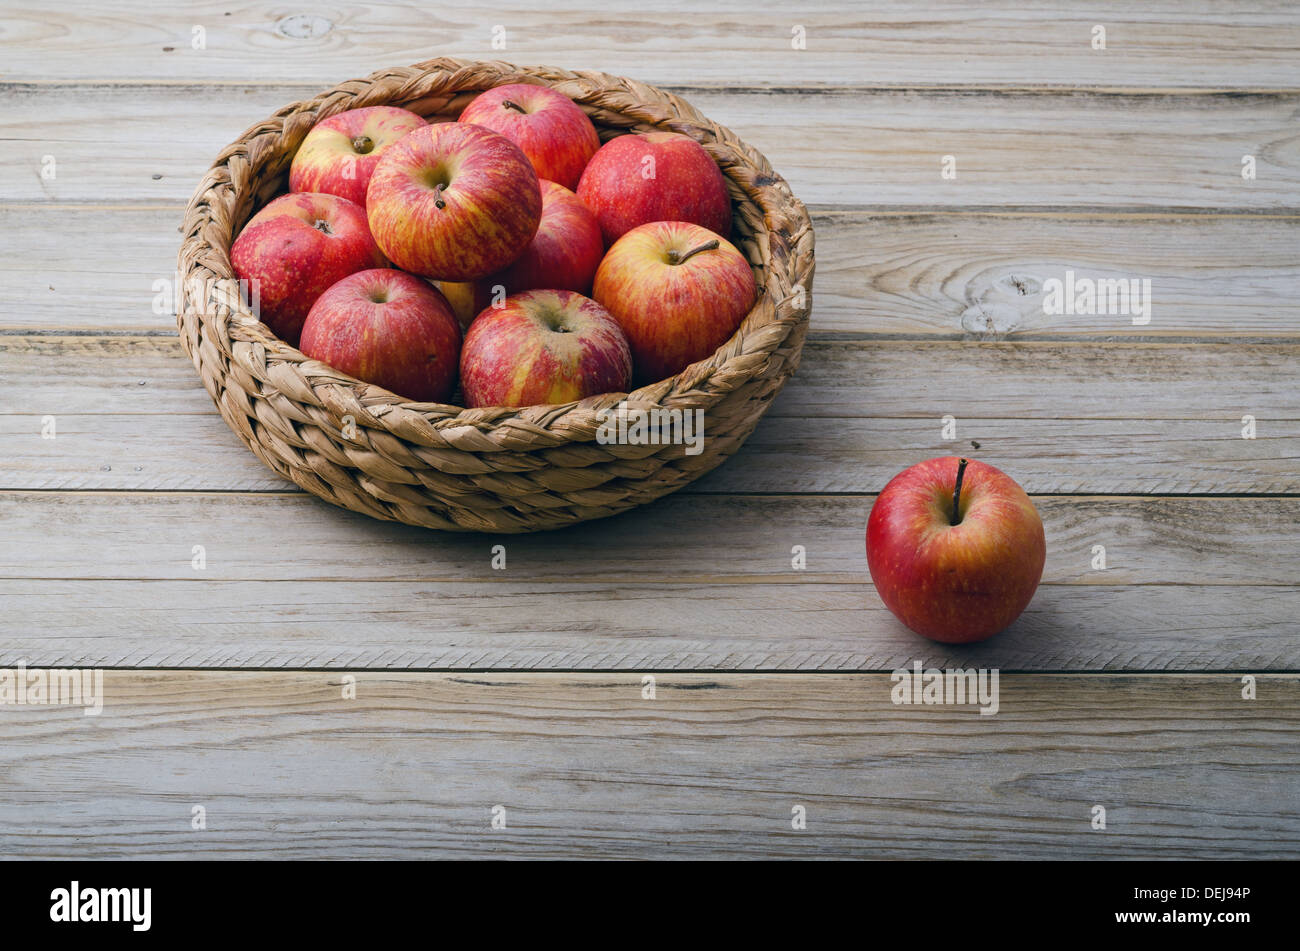 La vie encore. Panier de pommes rouges sur table en bois Banque D'Images